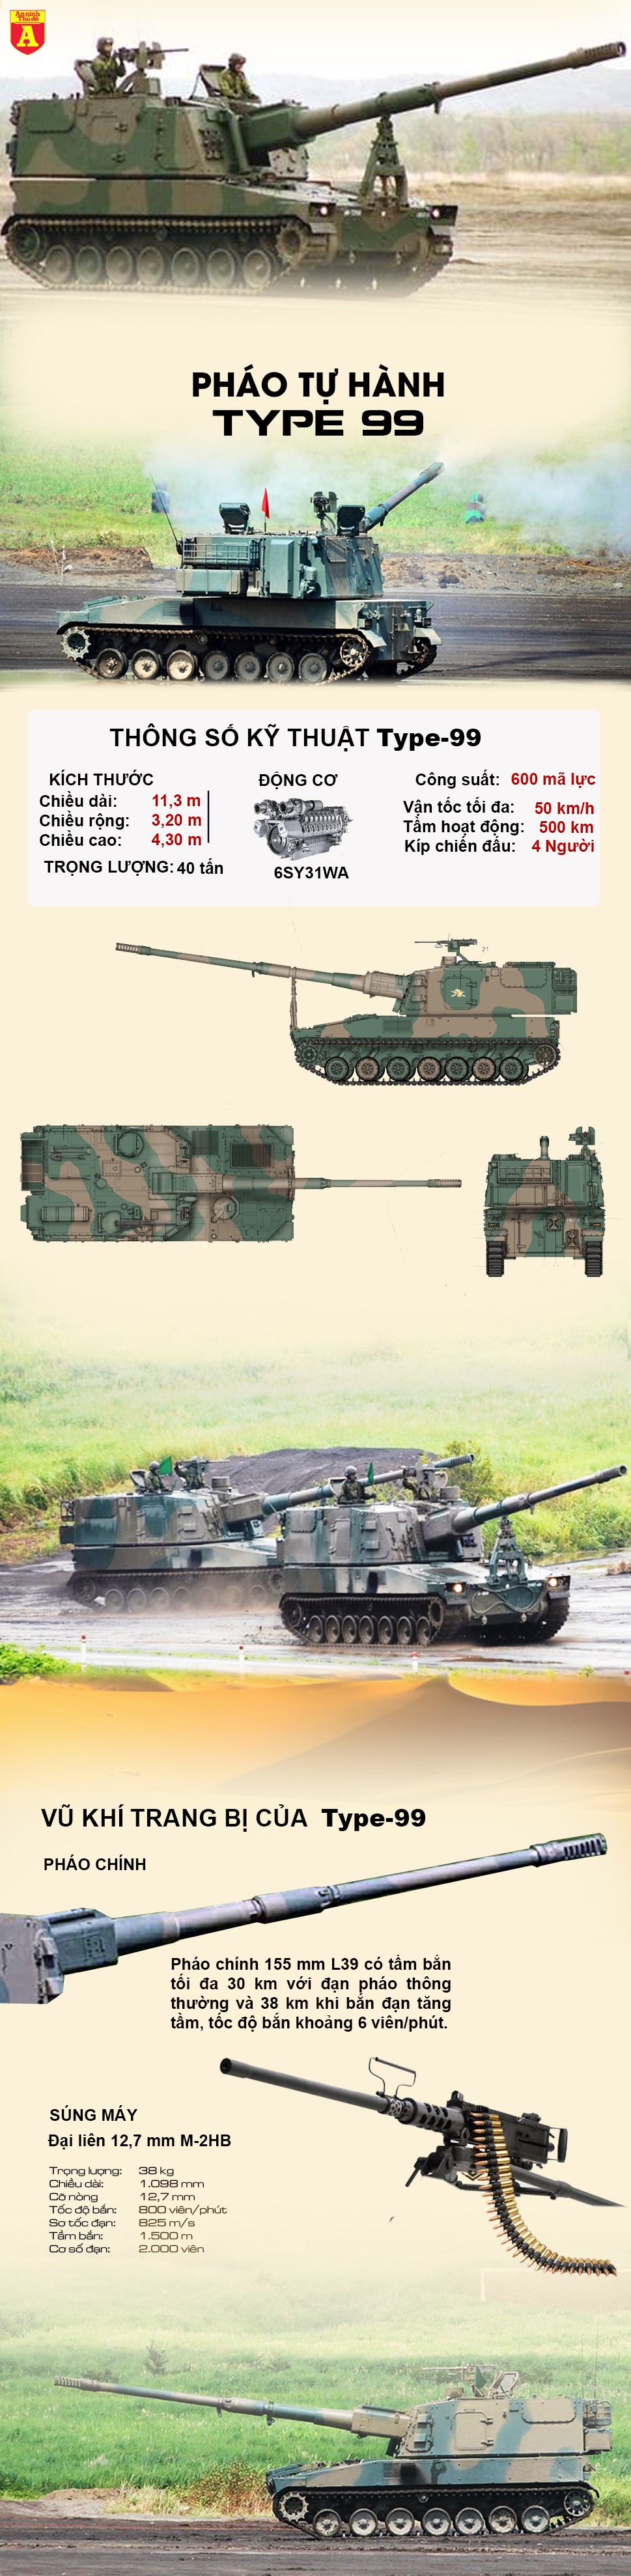 [Infographic] Đắt xắt ra miếng, pháo tự hành Type 99 Nhật Bản có giá thành cao gấp 3 xe tăng T-90 ảnh 2